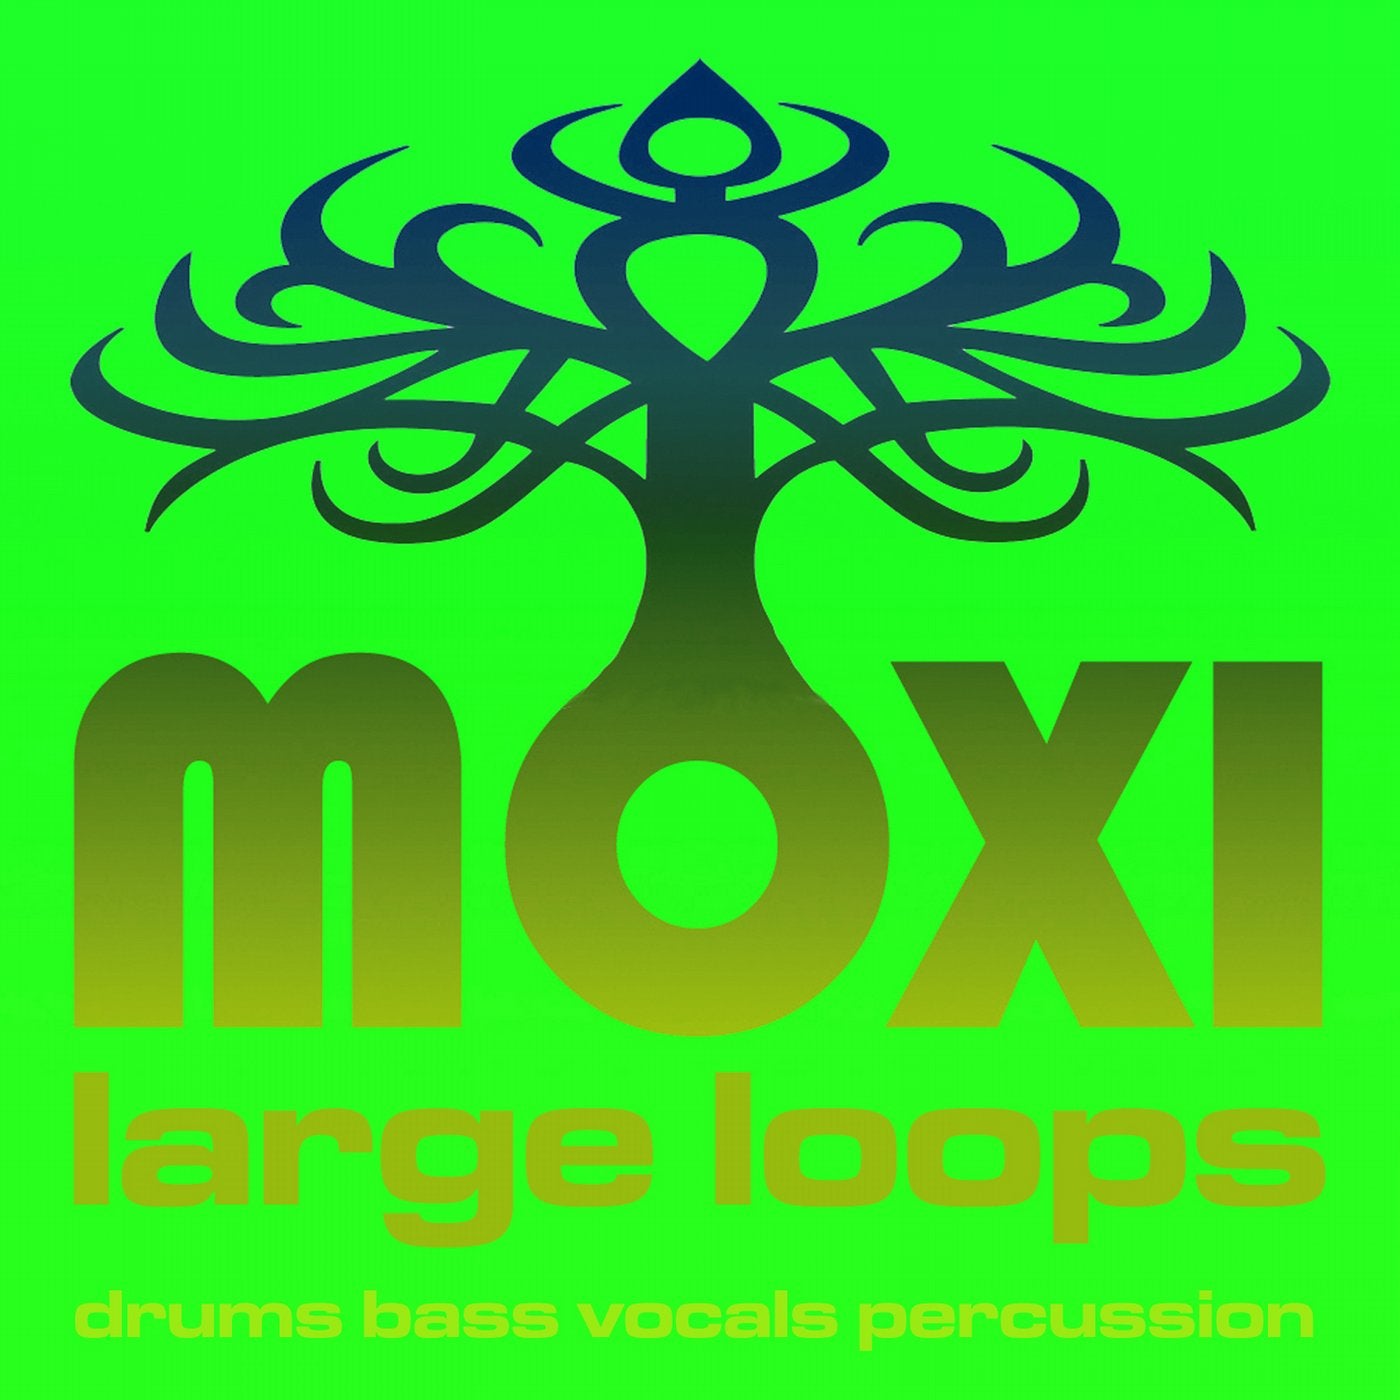 Vortex Loopy Loops Volume 12